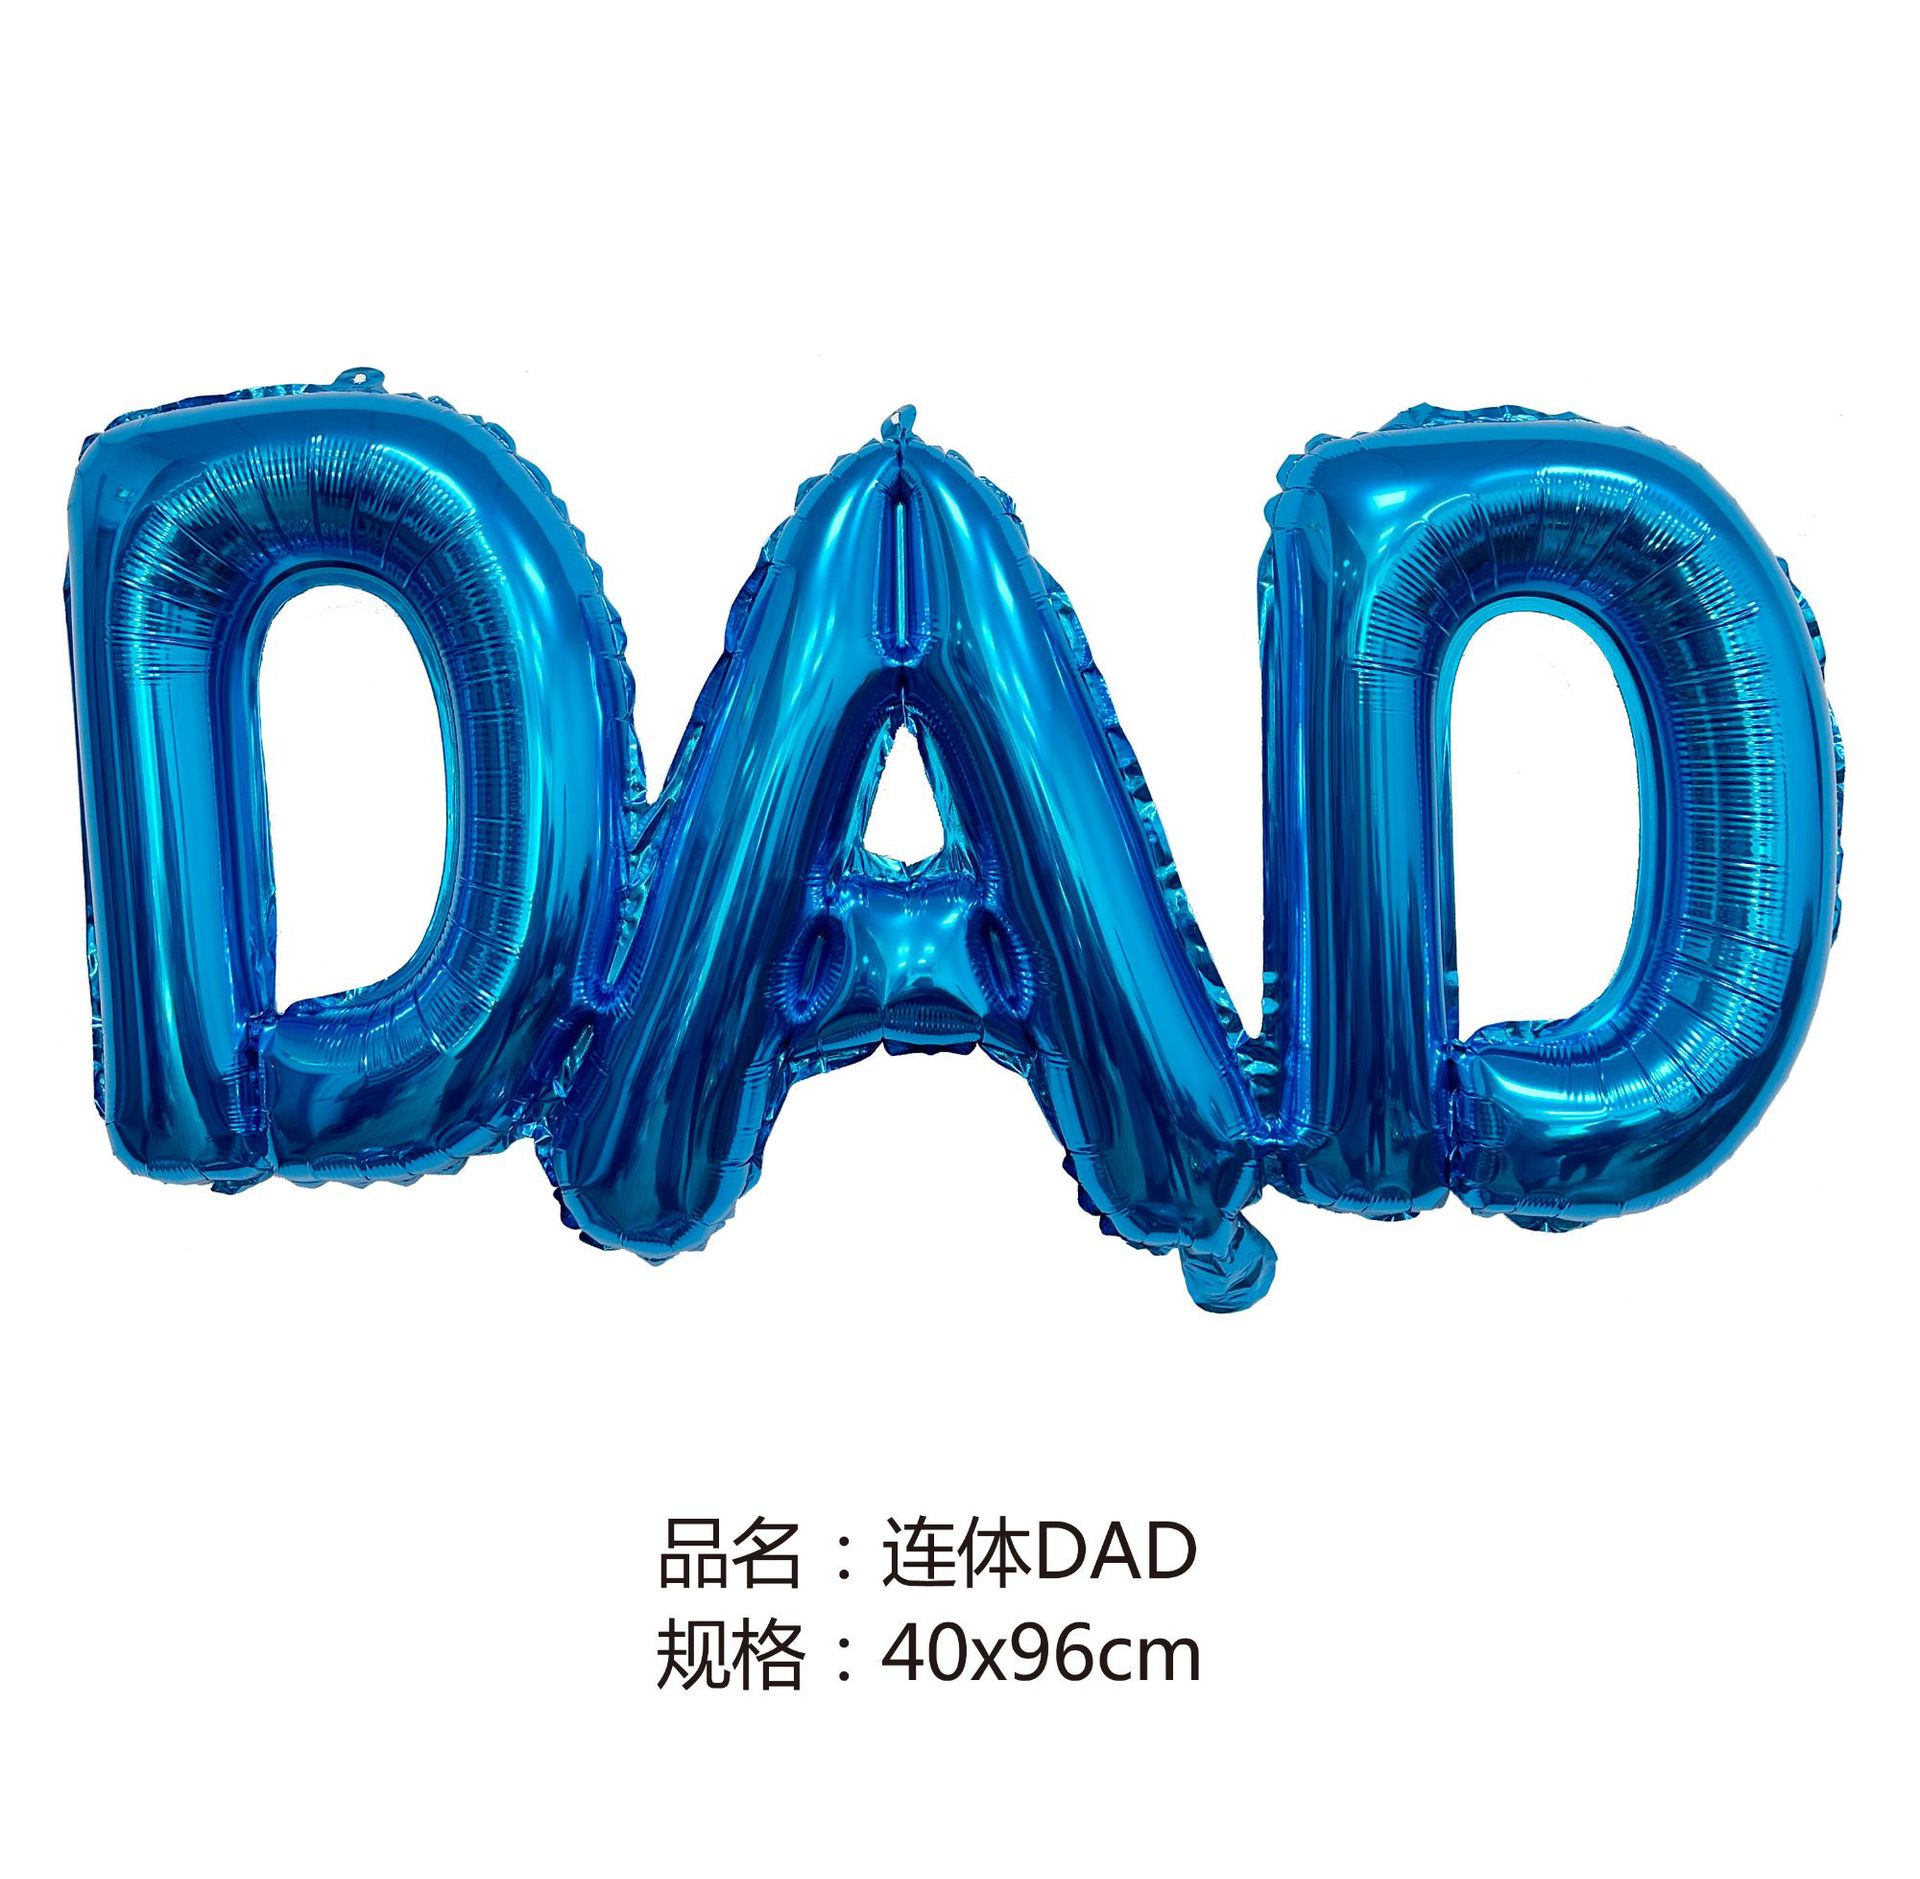 dad2